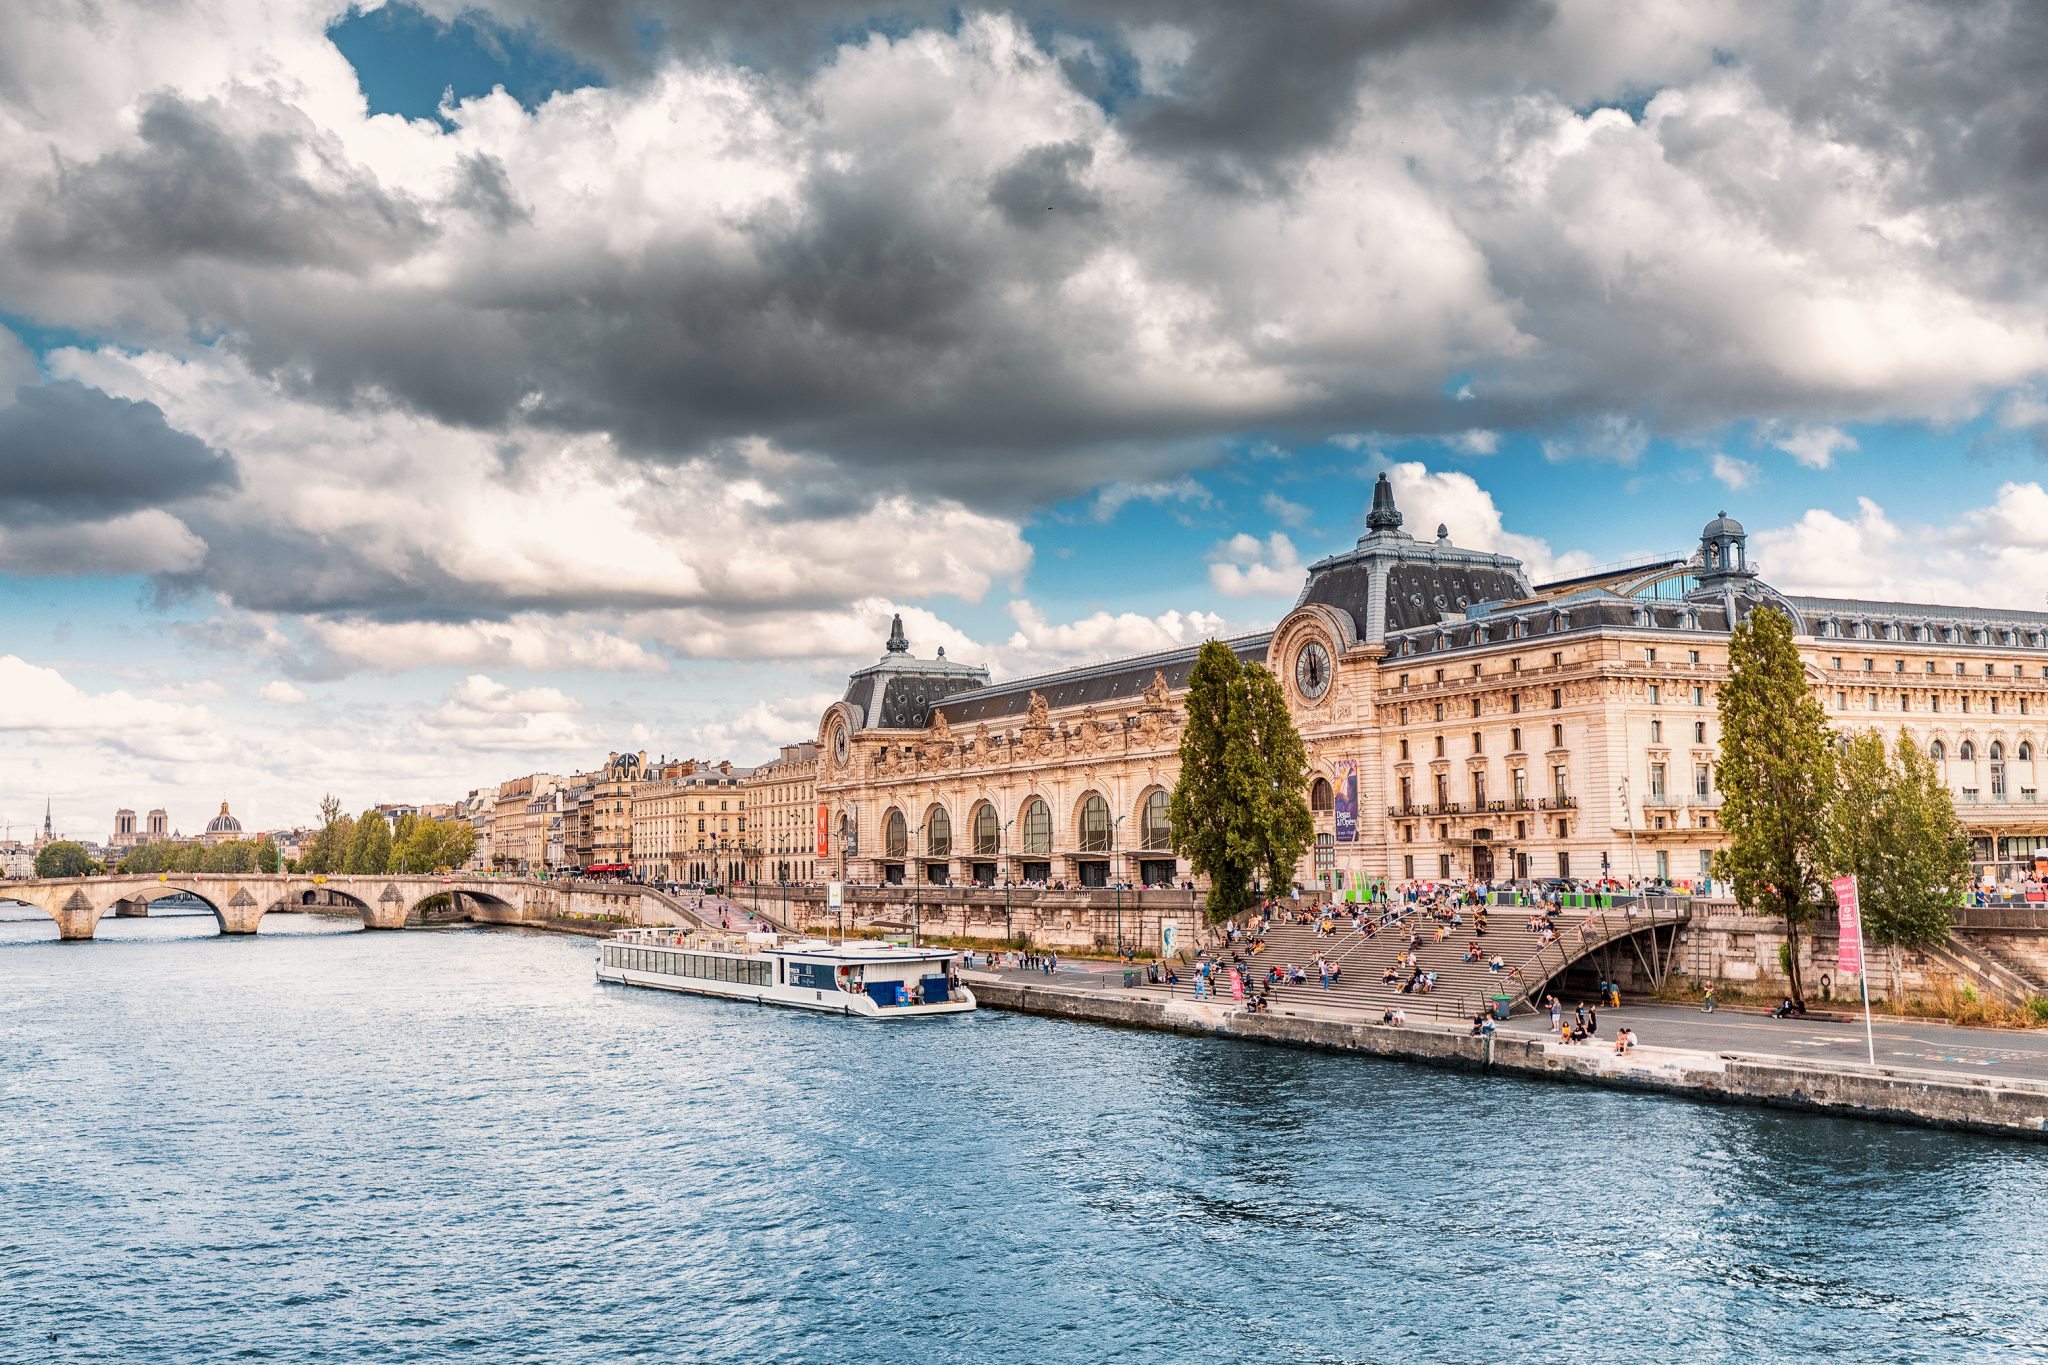 Principais pontos turísticos de Paris: fachada do Museu de Orsay e do Rio Sena, em Paris | Crédito editorial: frantic00/Shutterstock.com